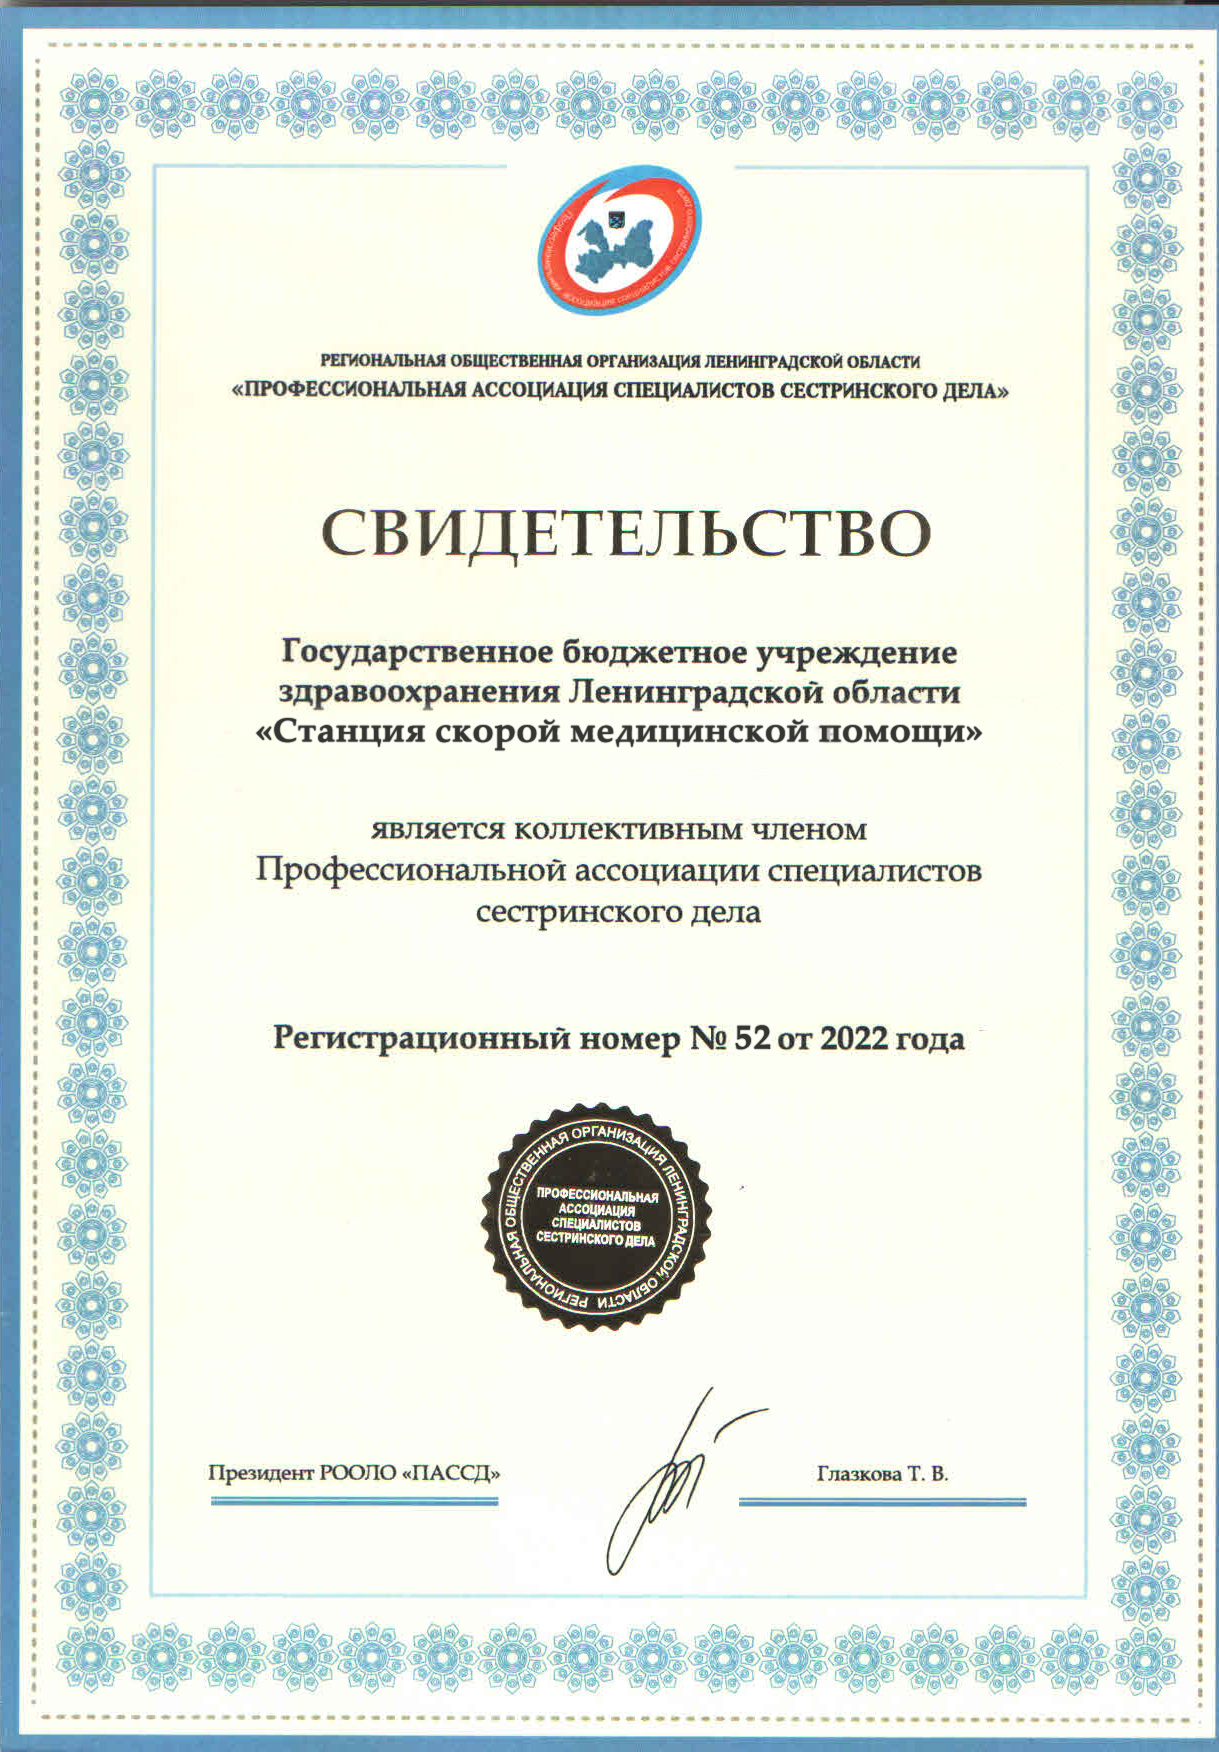 ГБУЗ ЛО ССМП: сертификат